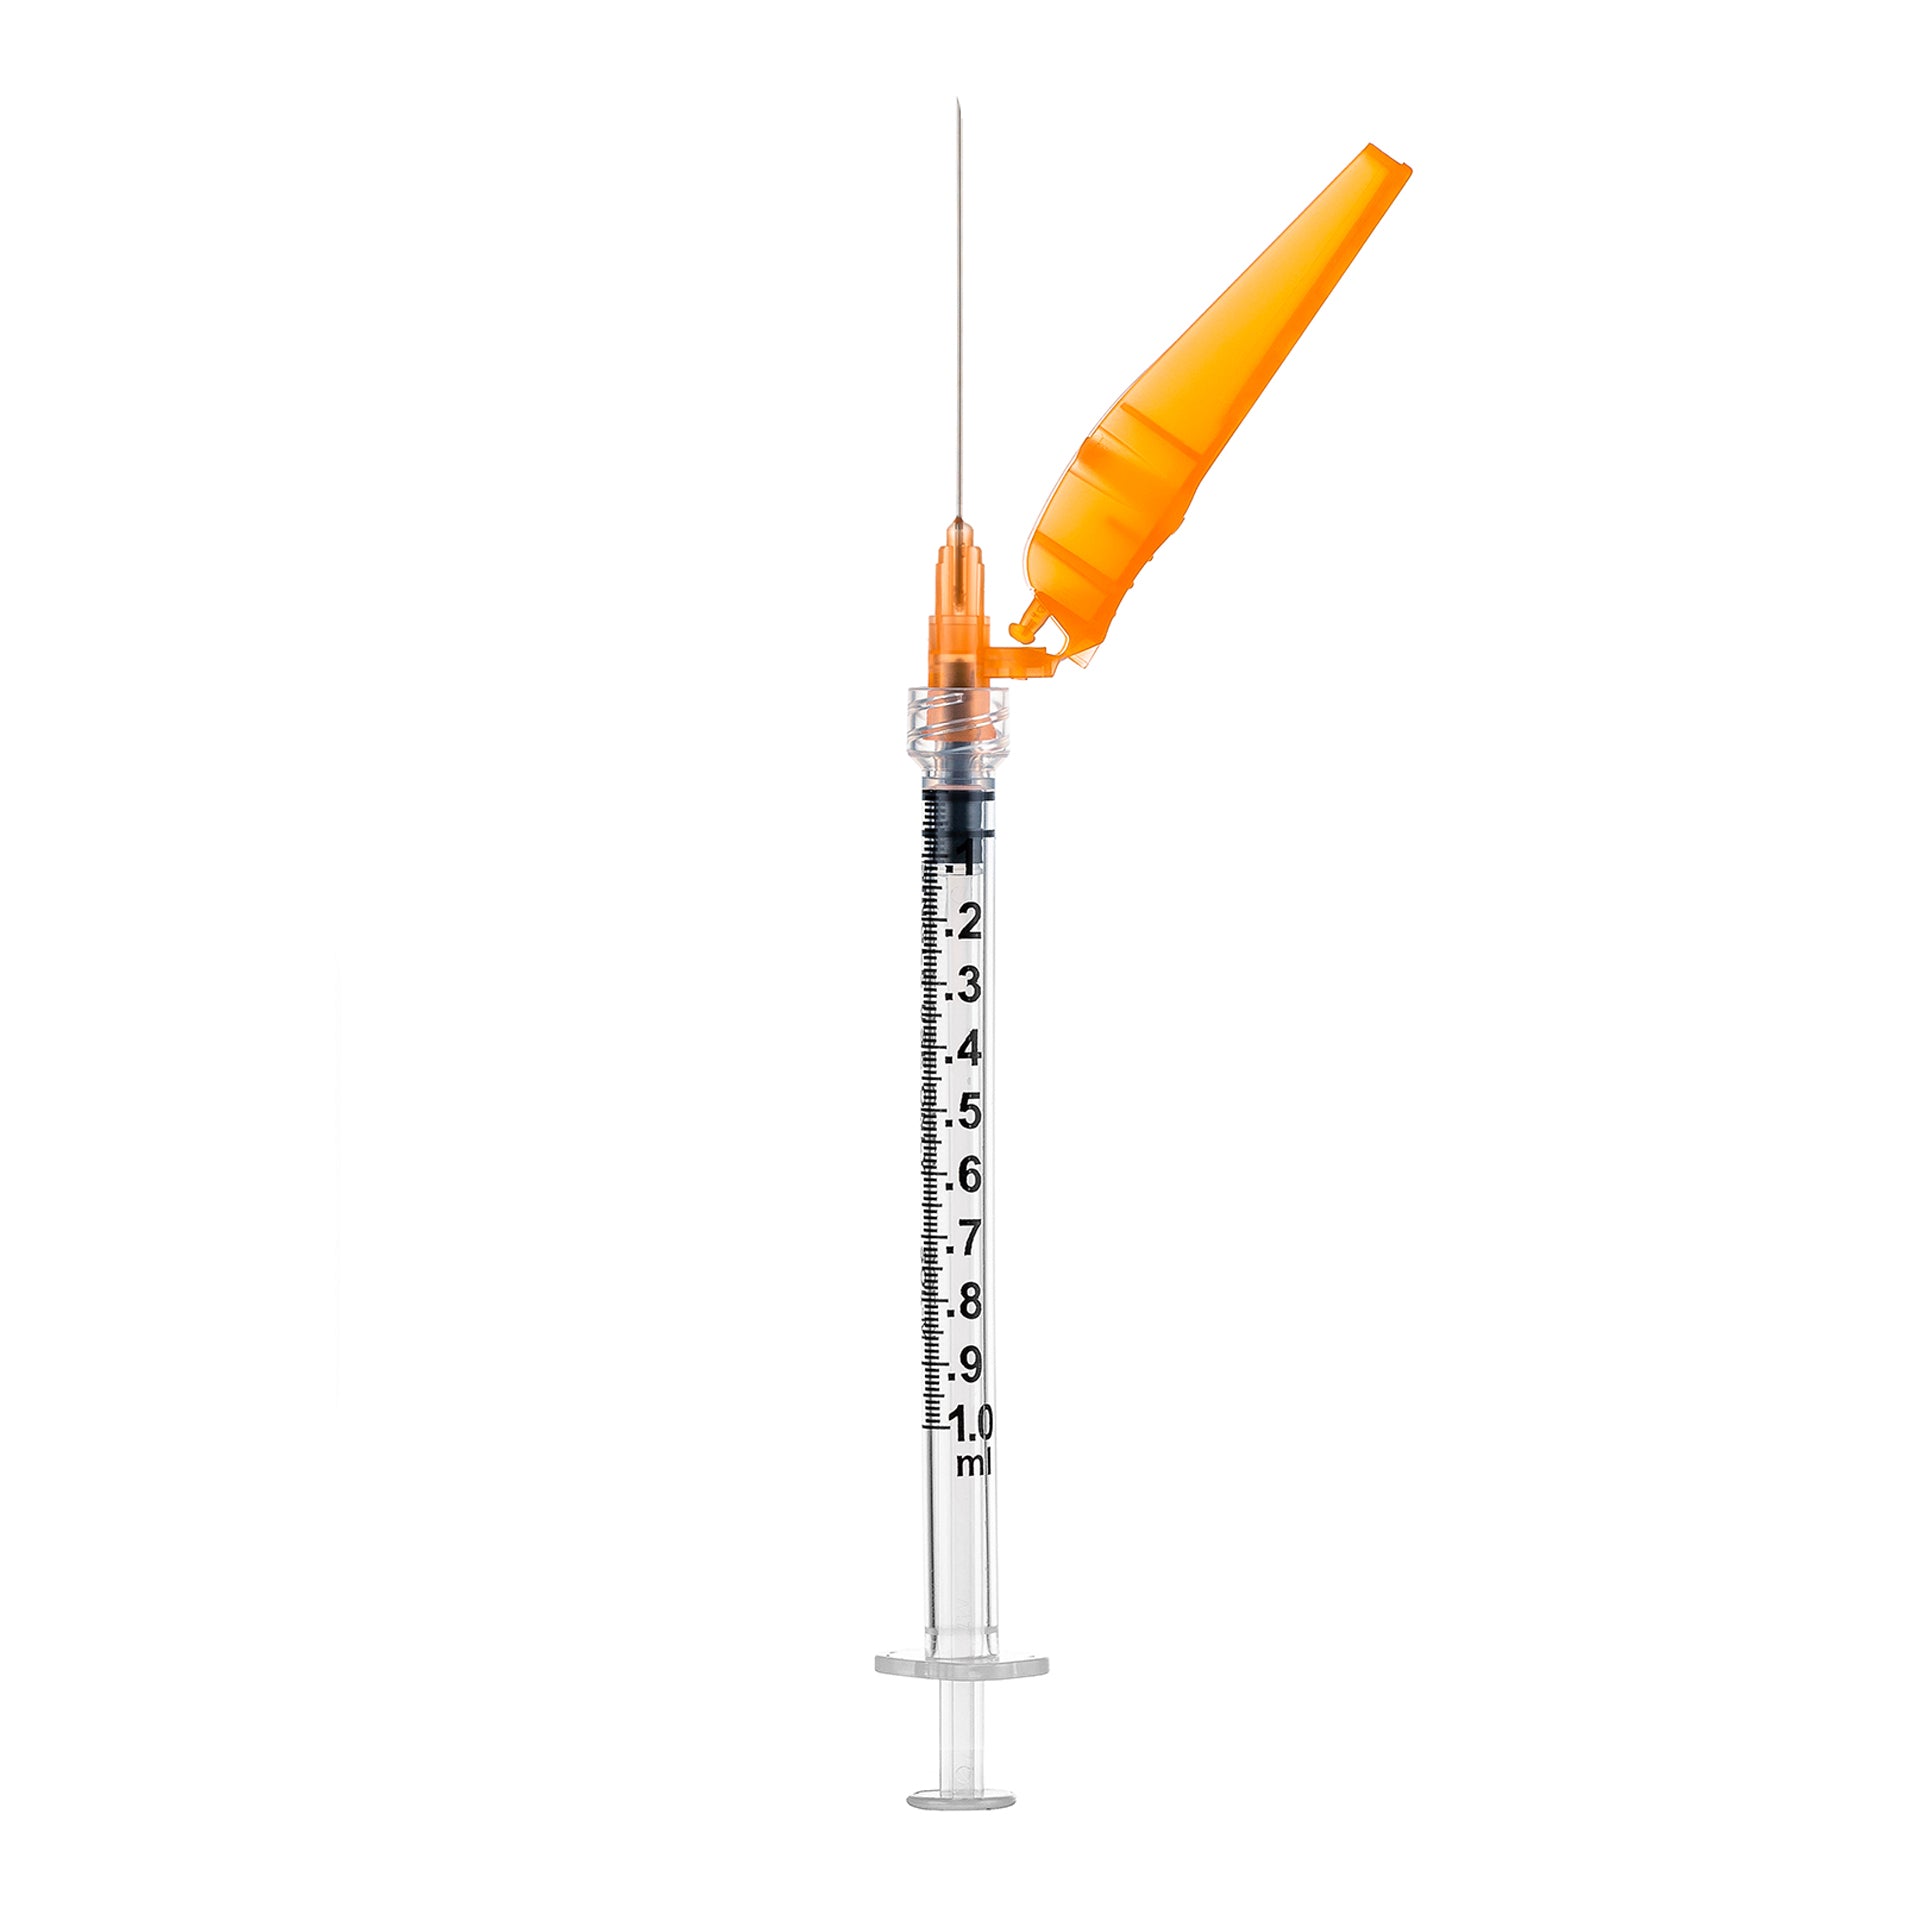 BX/50 - SOL-CARE 1ml Luer Lock Syringe w/Safety Needle 27G*1/2 (needle aside)